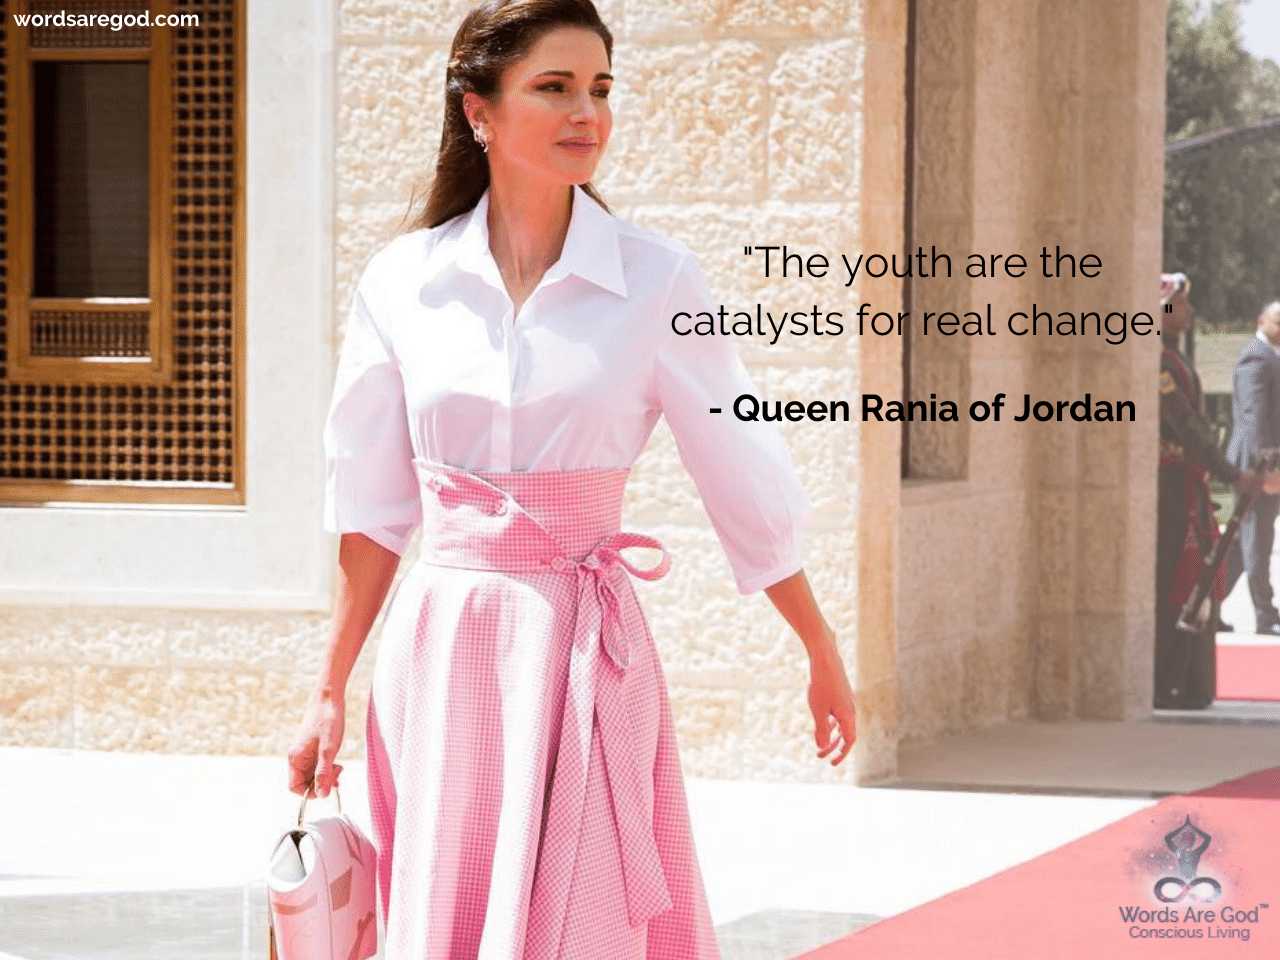 Queen Rania of Jordan Best Quote by Queen Rania of Jordan